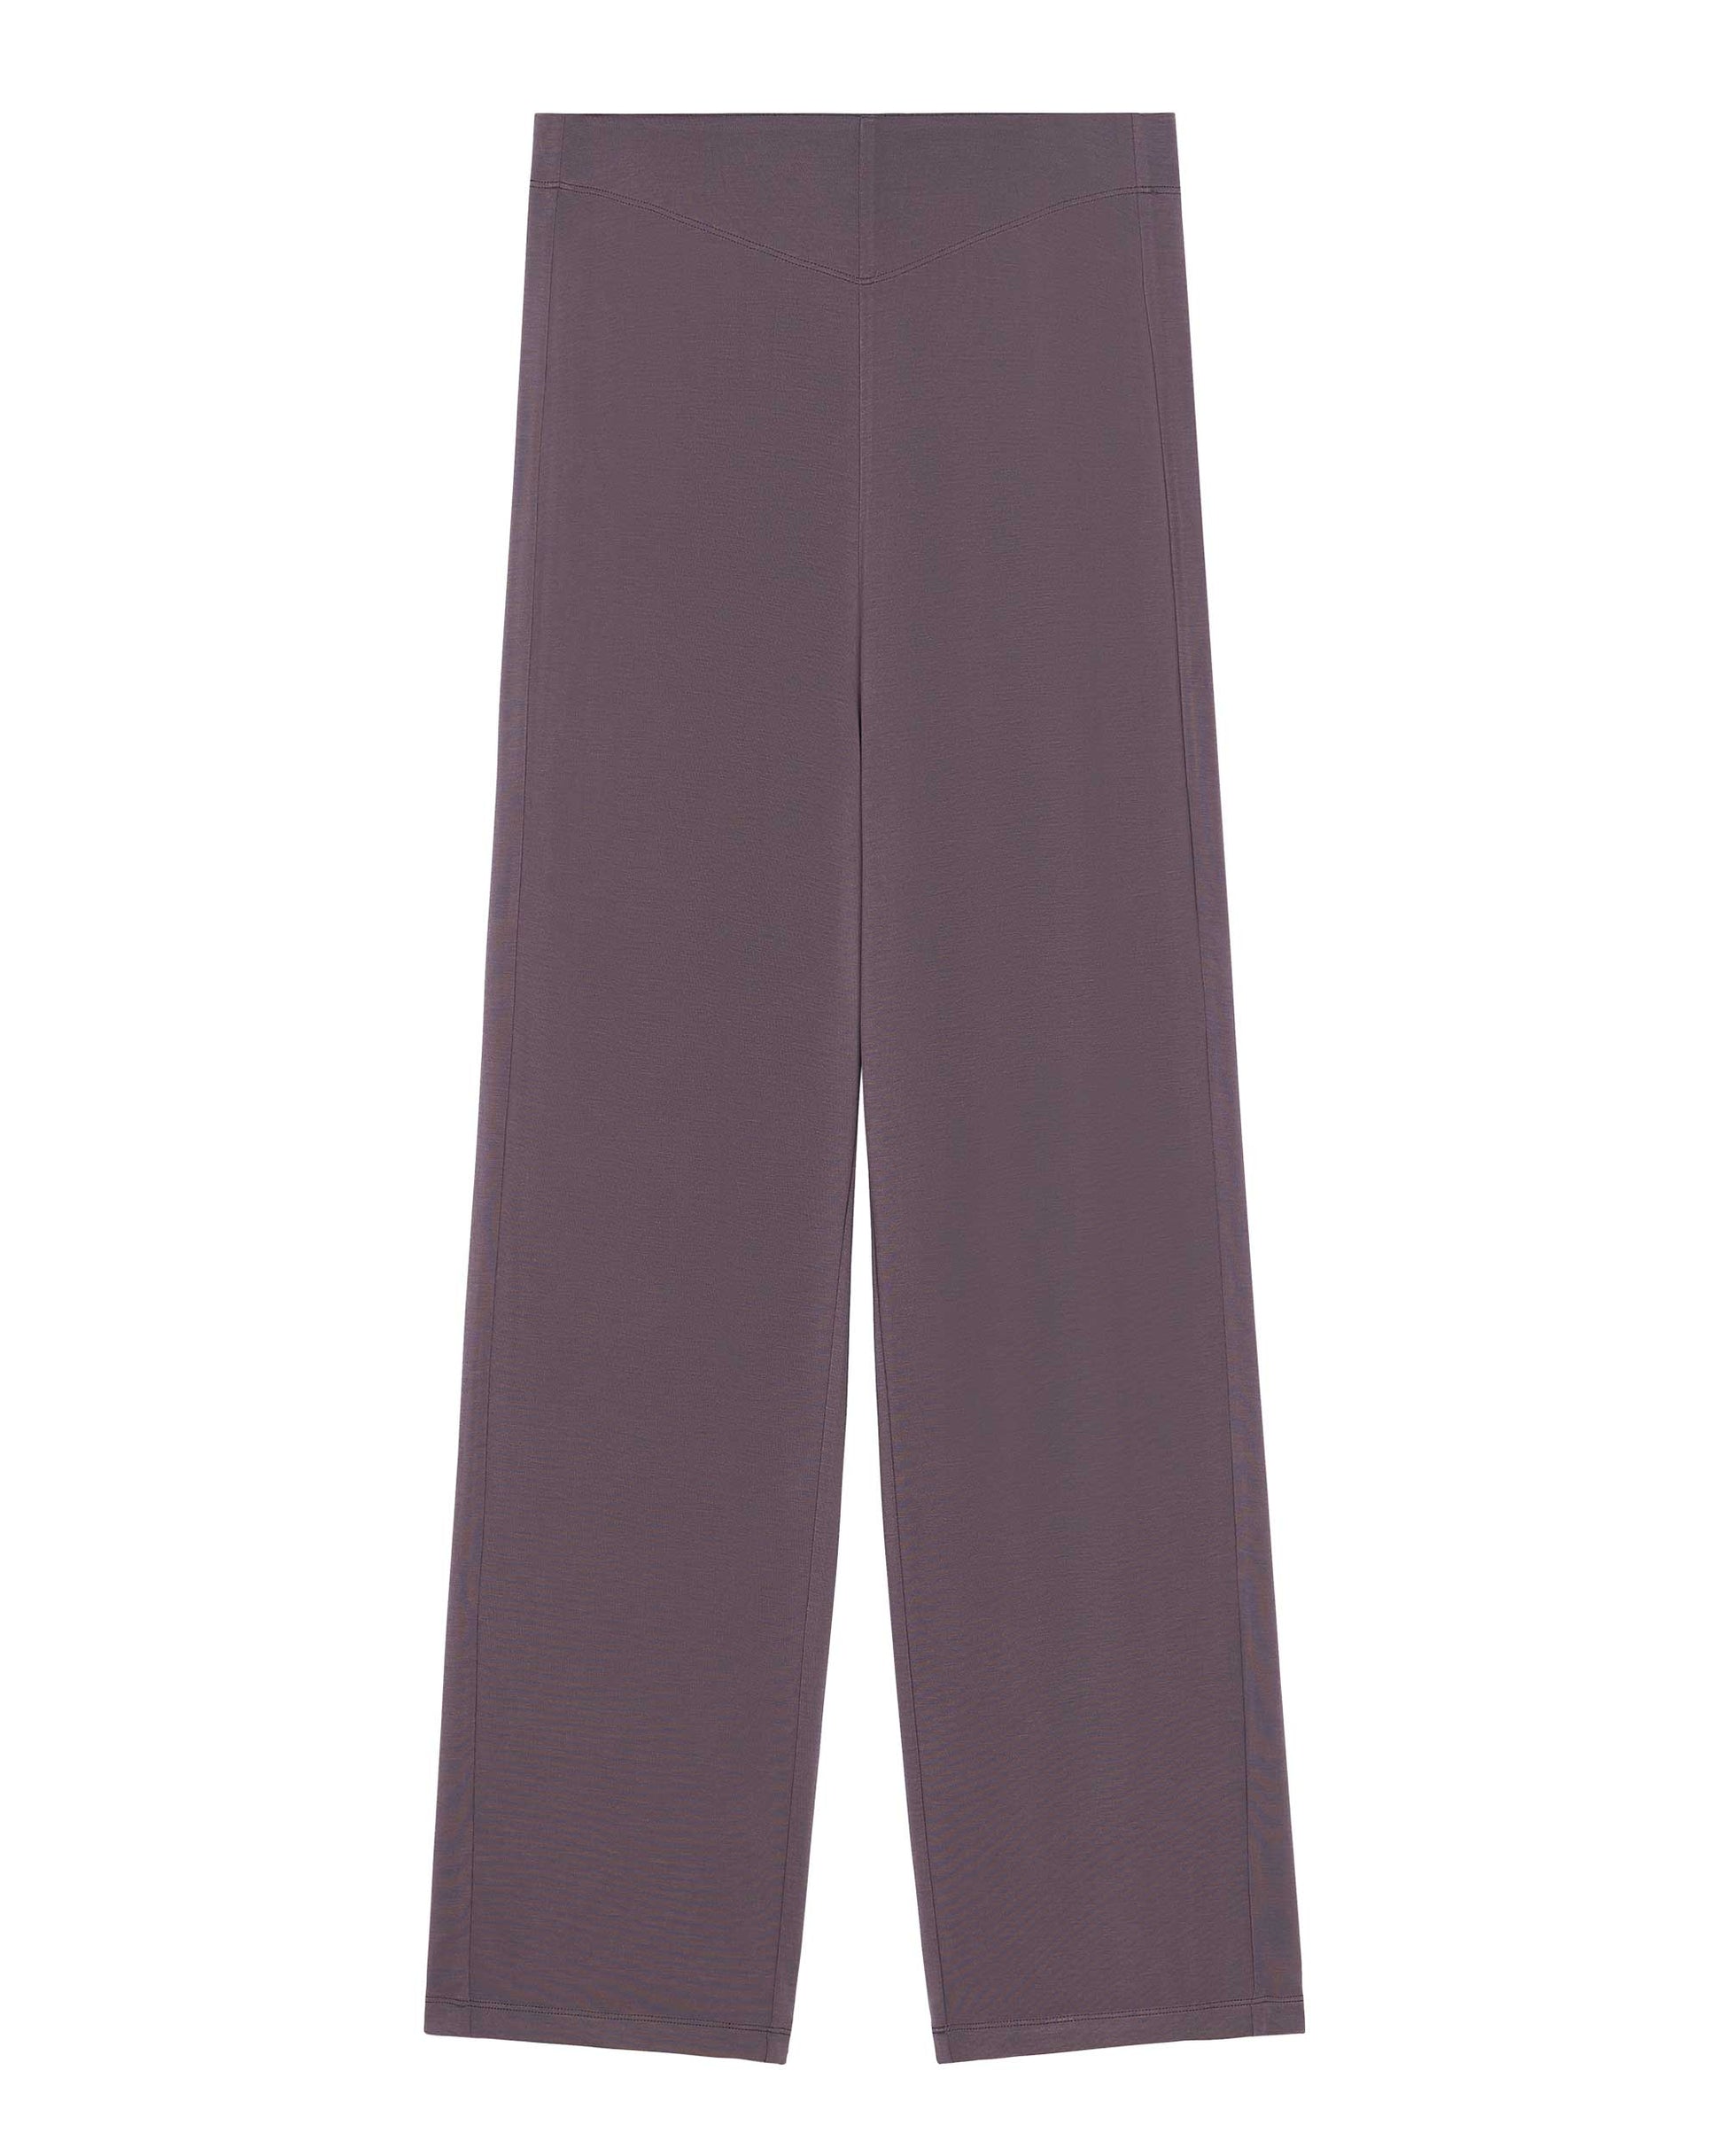 A purple pajama pants